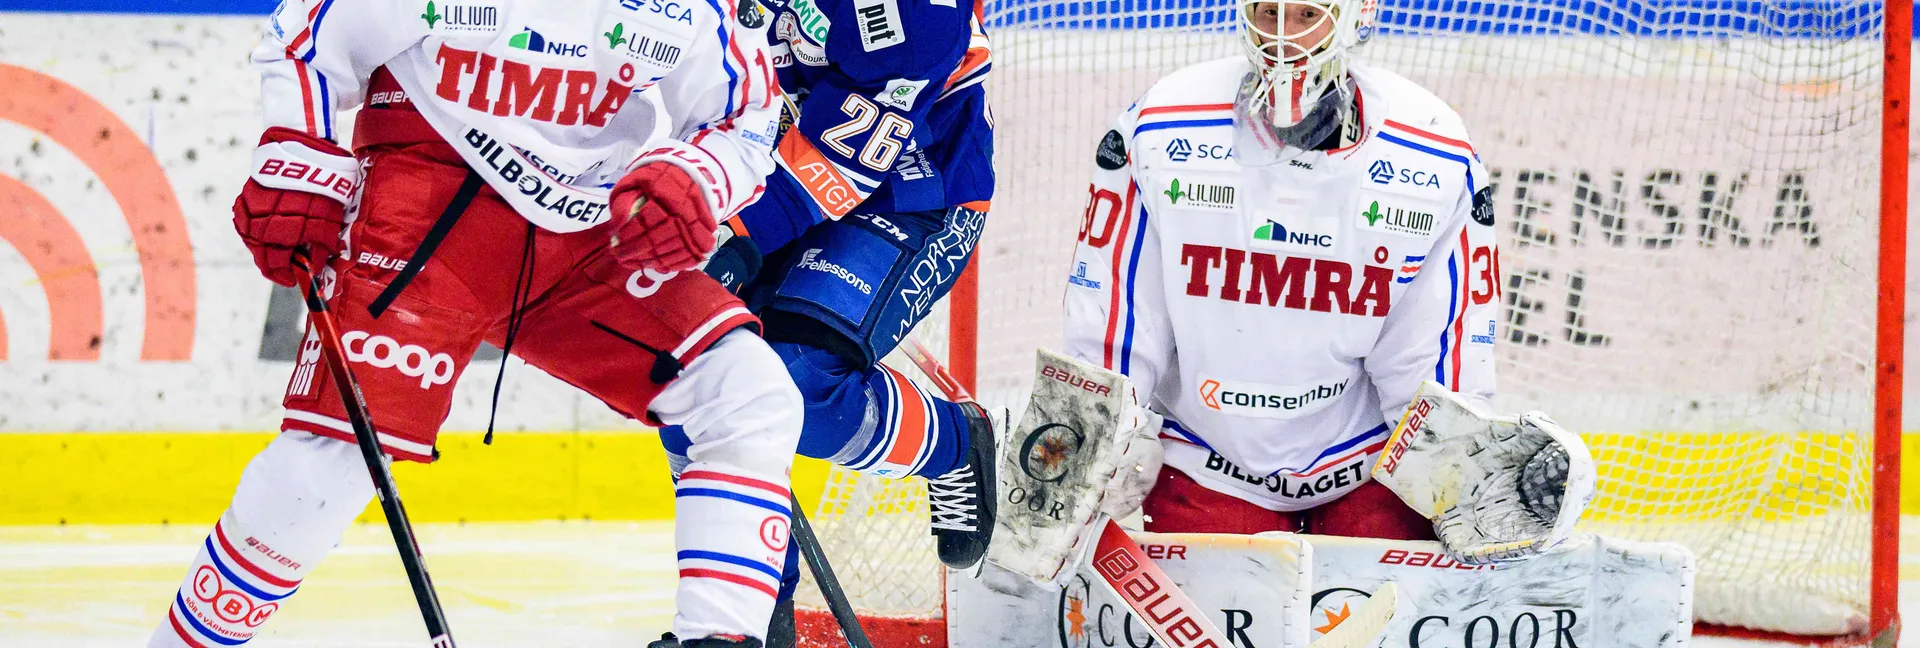 Ishockeymatch mellan Timrå och Växjö i SHL